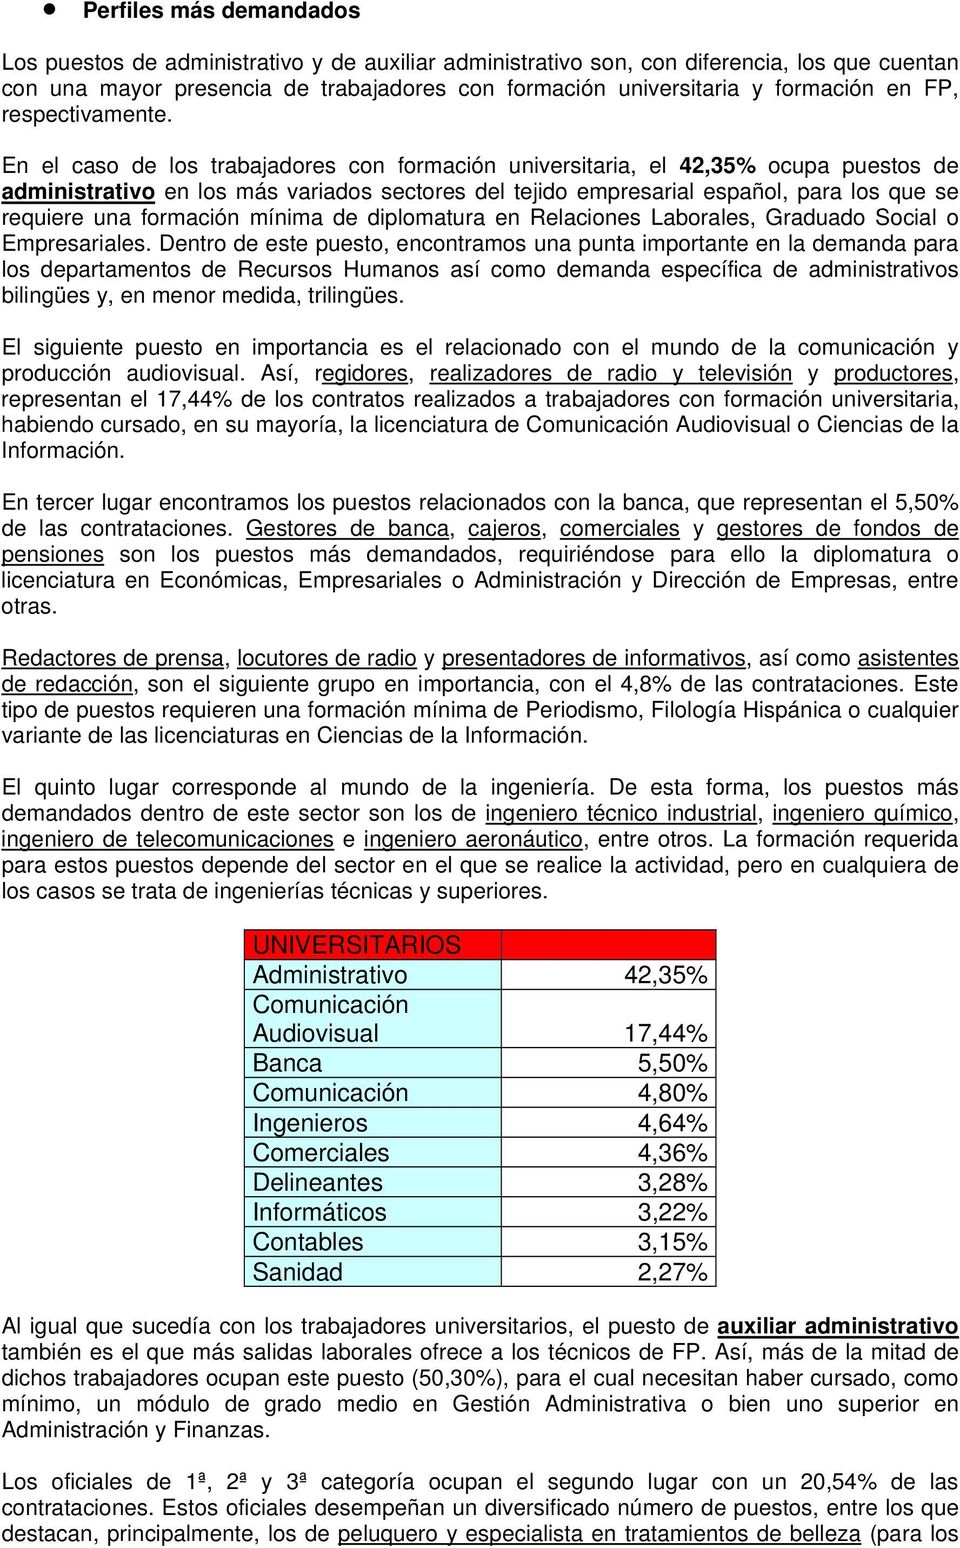 En el caso de los trabajadores con formación universitaria, el 42,35% ocupa puestos de administrativo en los más variados sectores del tejido empresarial español, para los que se requiere una